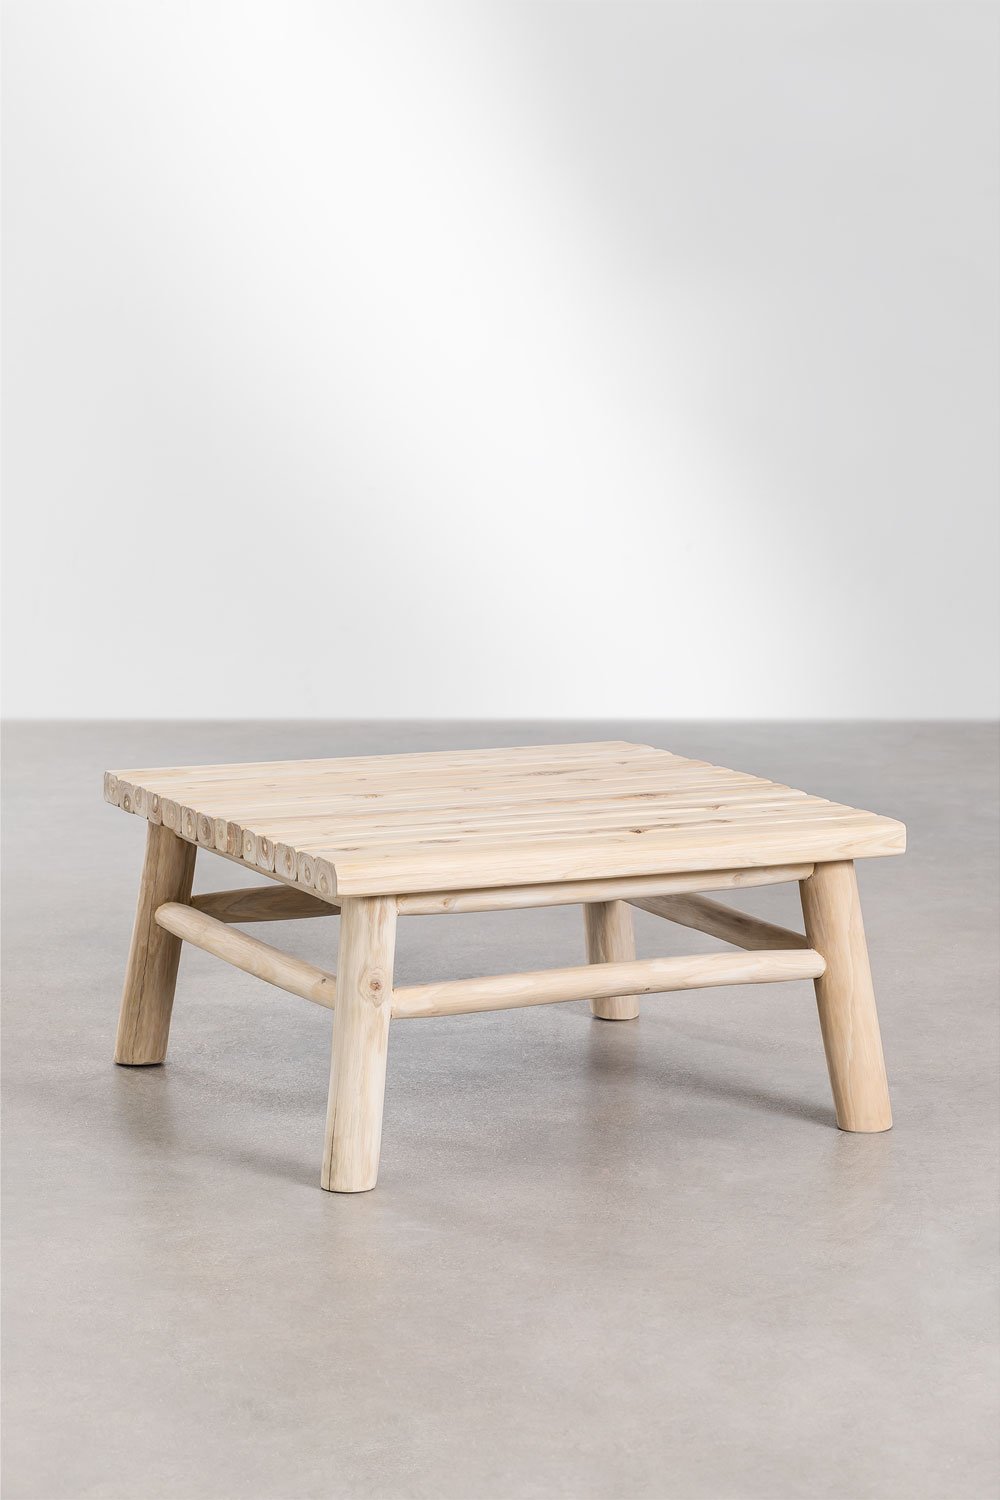 Kwadratowy stolik kawowy z drewna tekowego (80x80 cm) Narel, obrazek w galerii 1